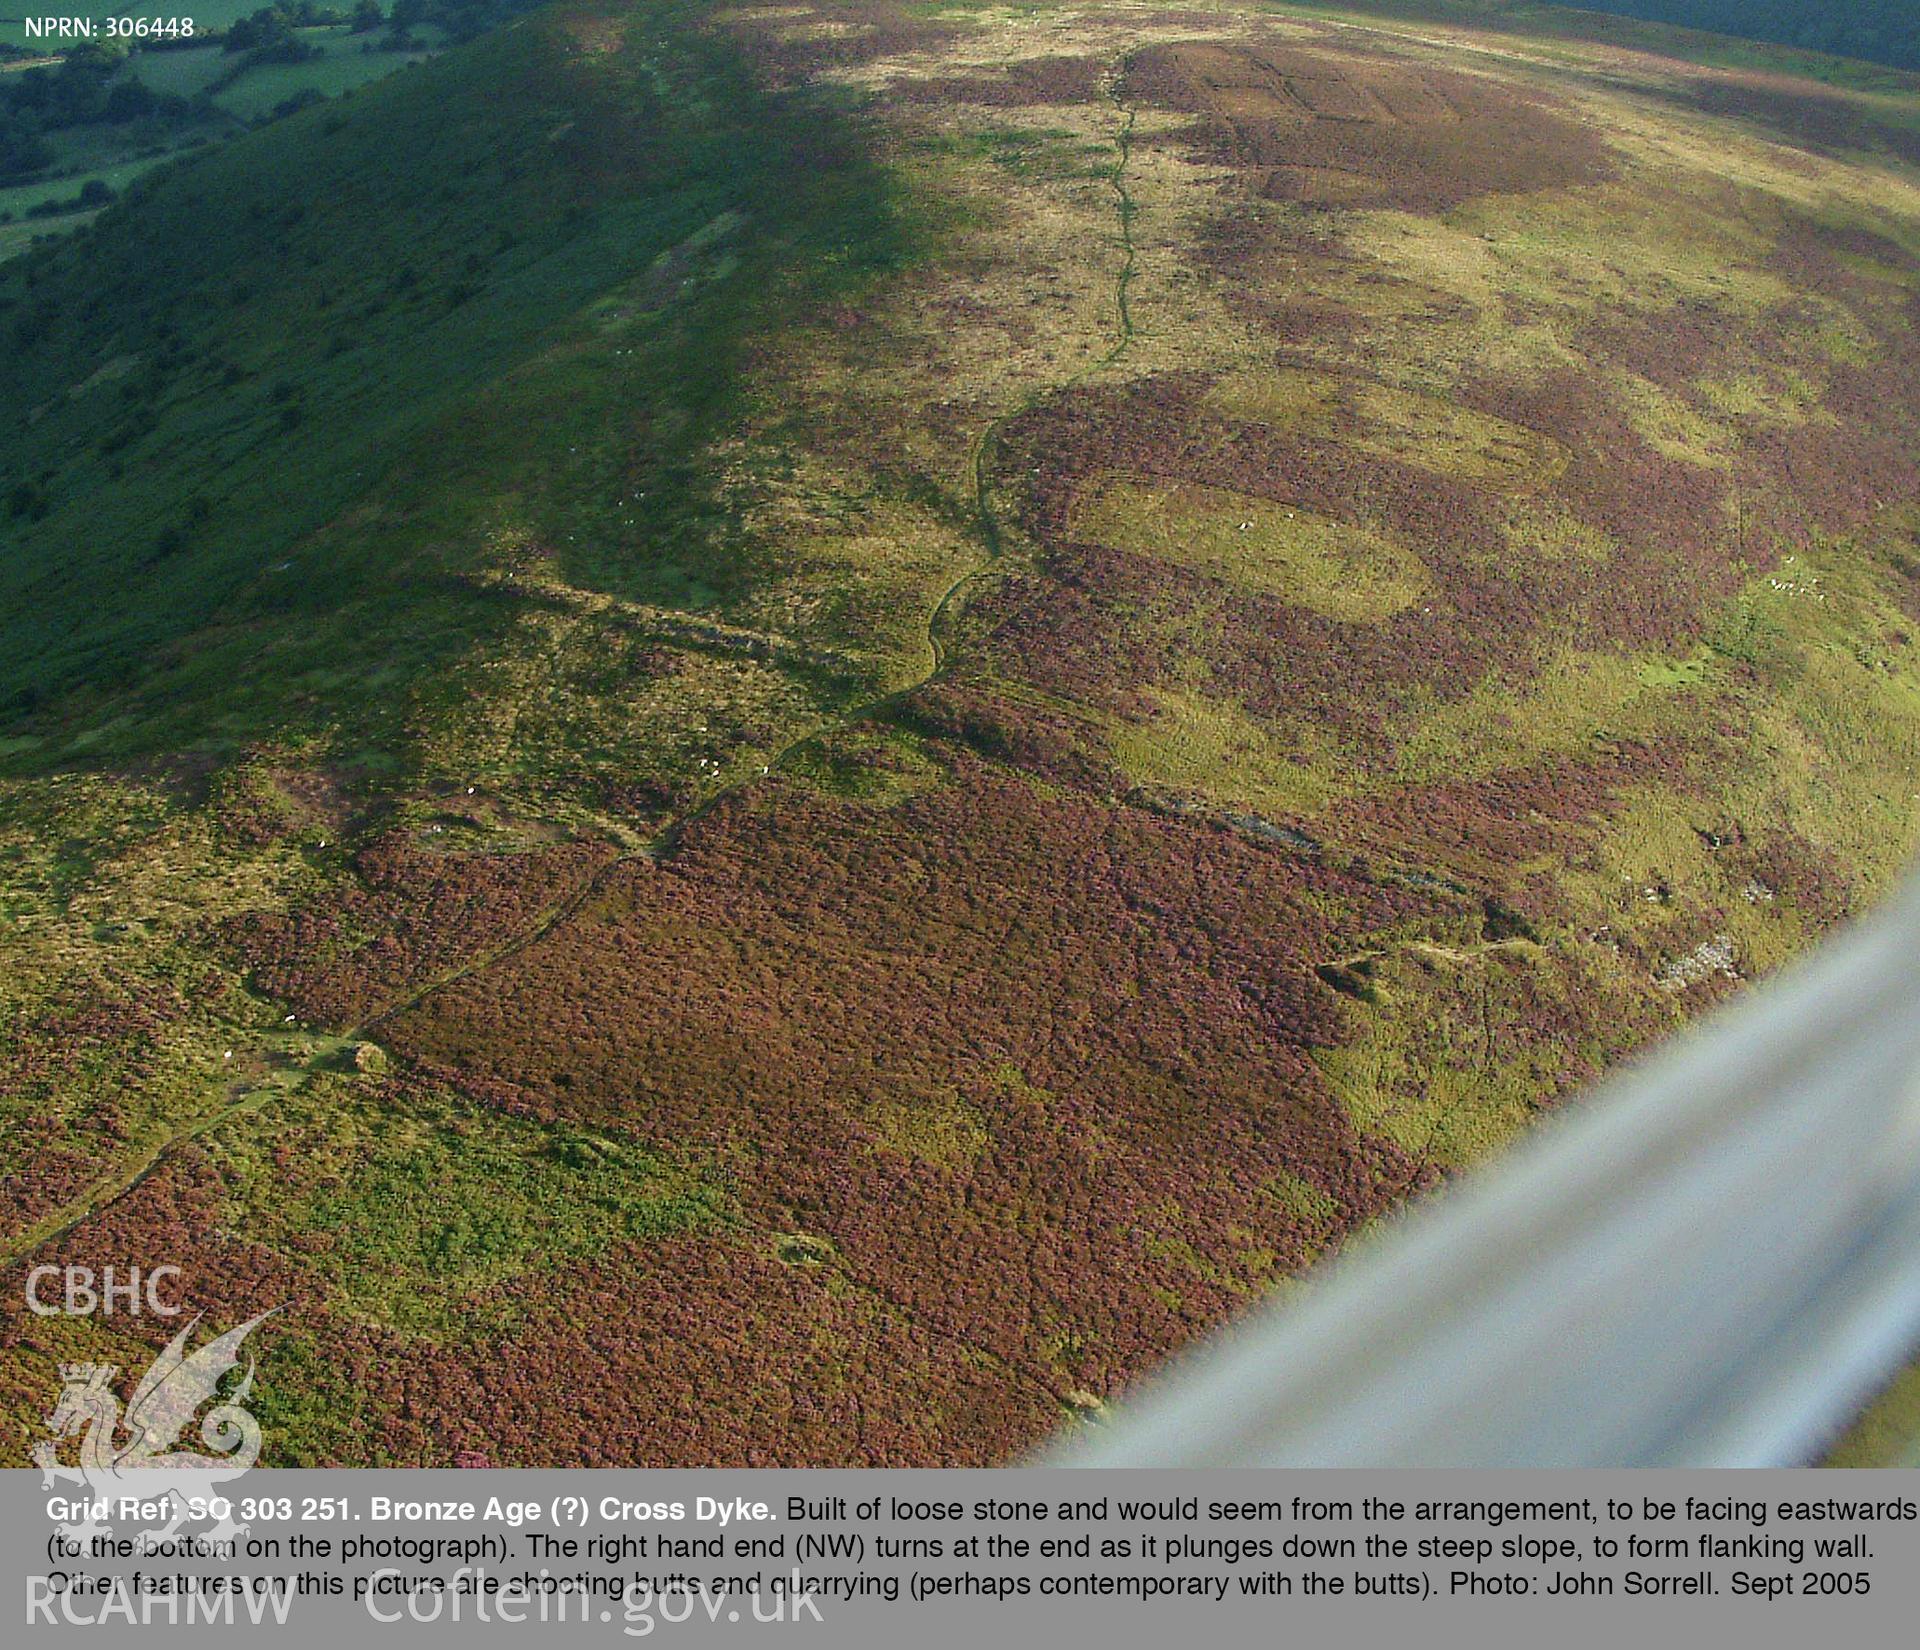 View of Hatterrall Crossdyke, taken by John Sorrell, September 2005.